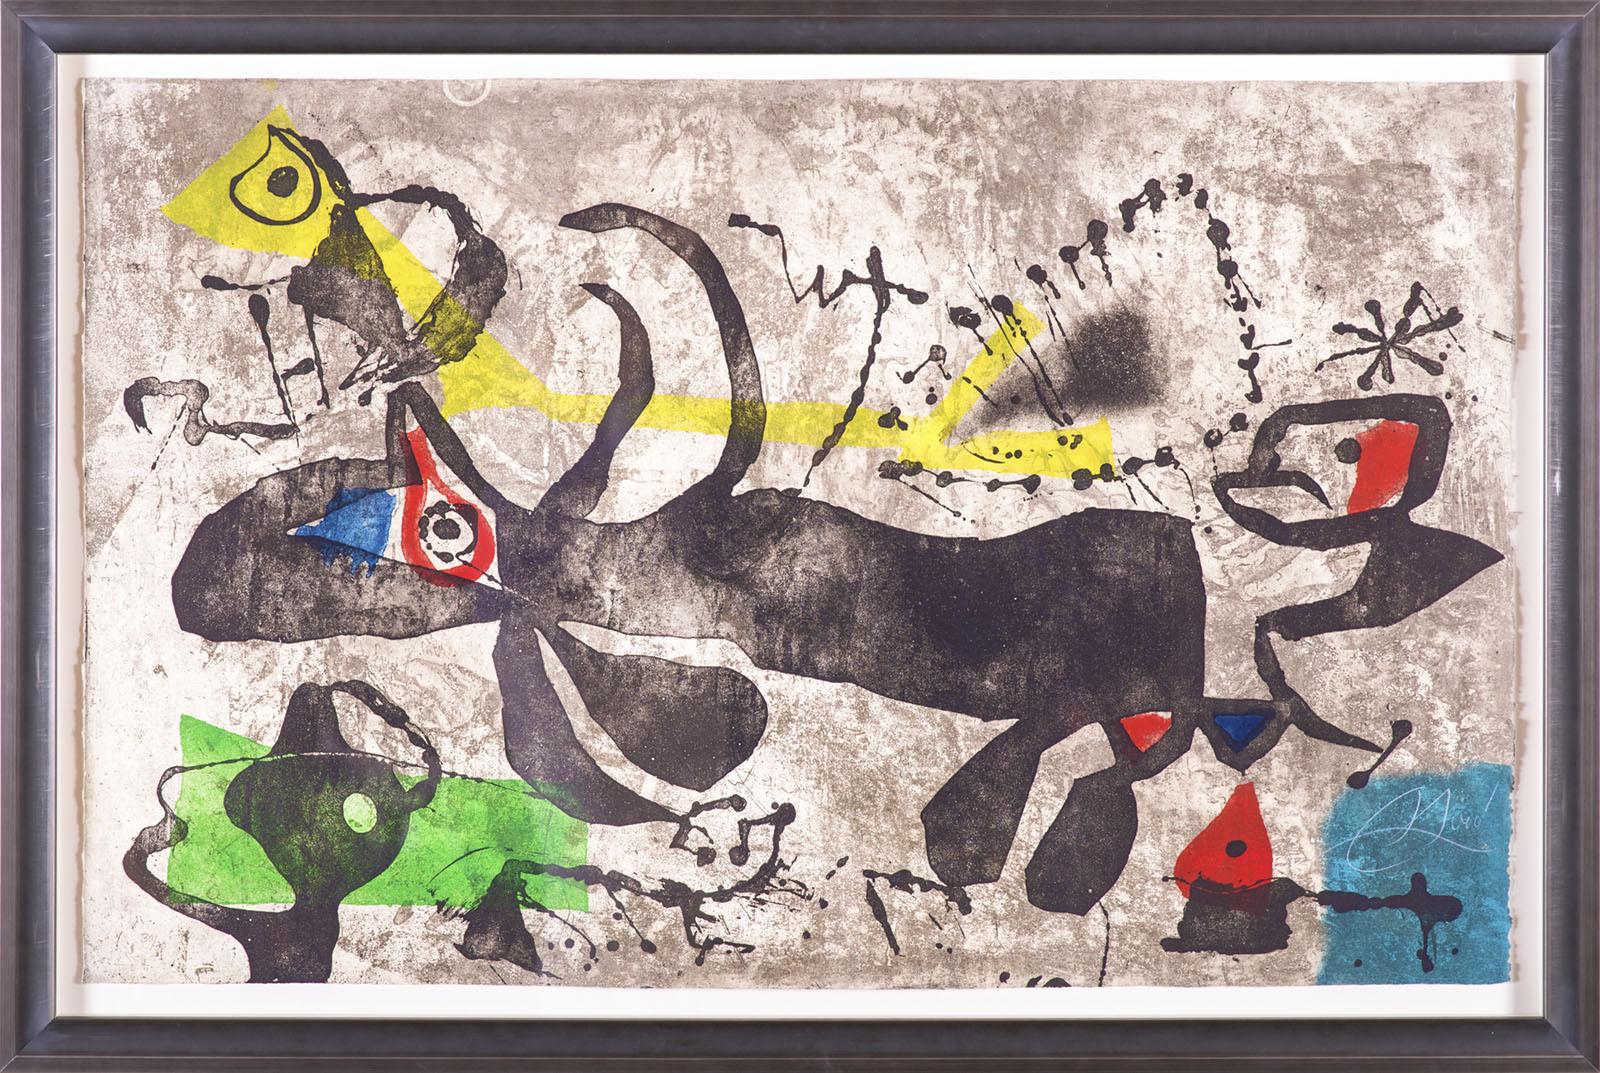 Els Gossos IV, etching, aquatint & carborundum in colors, signed - Print by Joan Miró